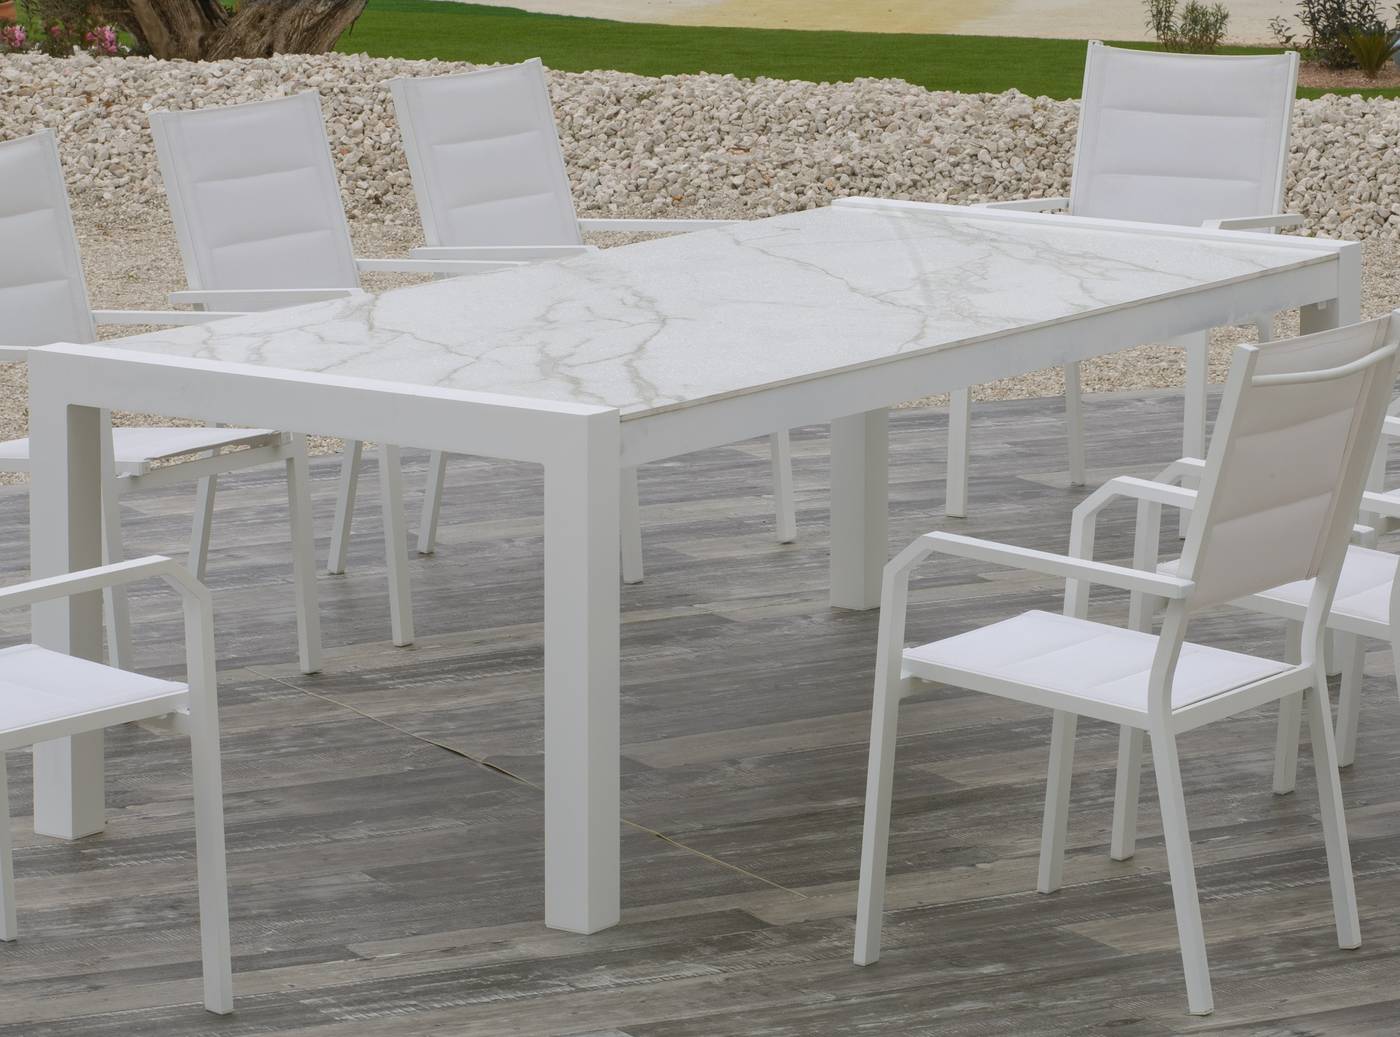 Mesa de aluminio rectangular de 235 cm. Tablero de piedra sinterizada de alta calidad. Disponible en varios colores.